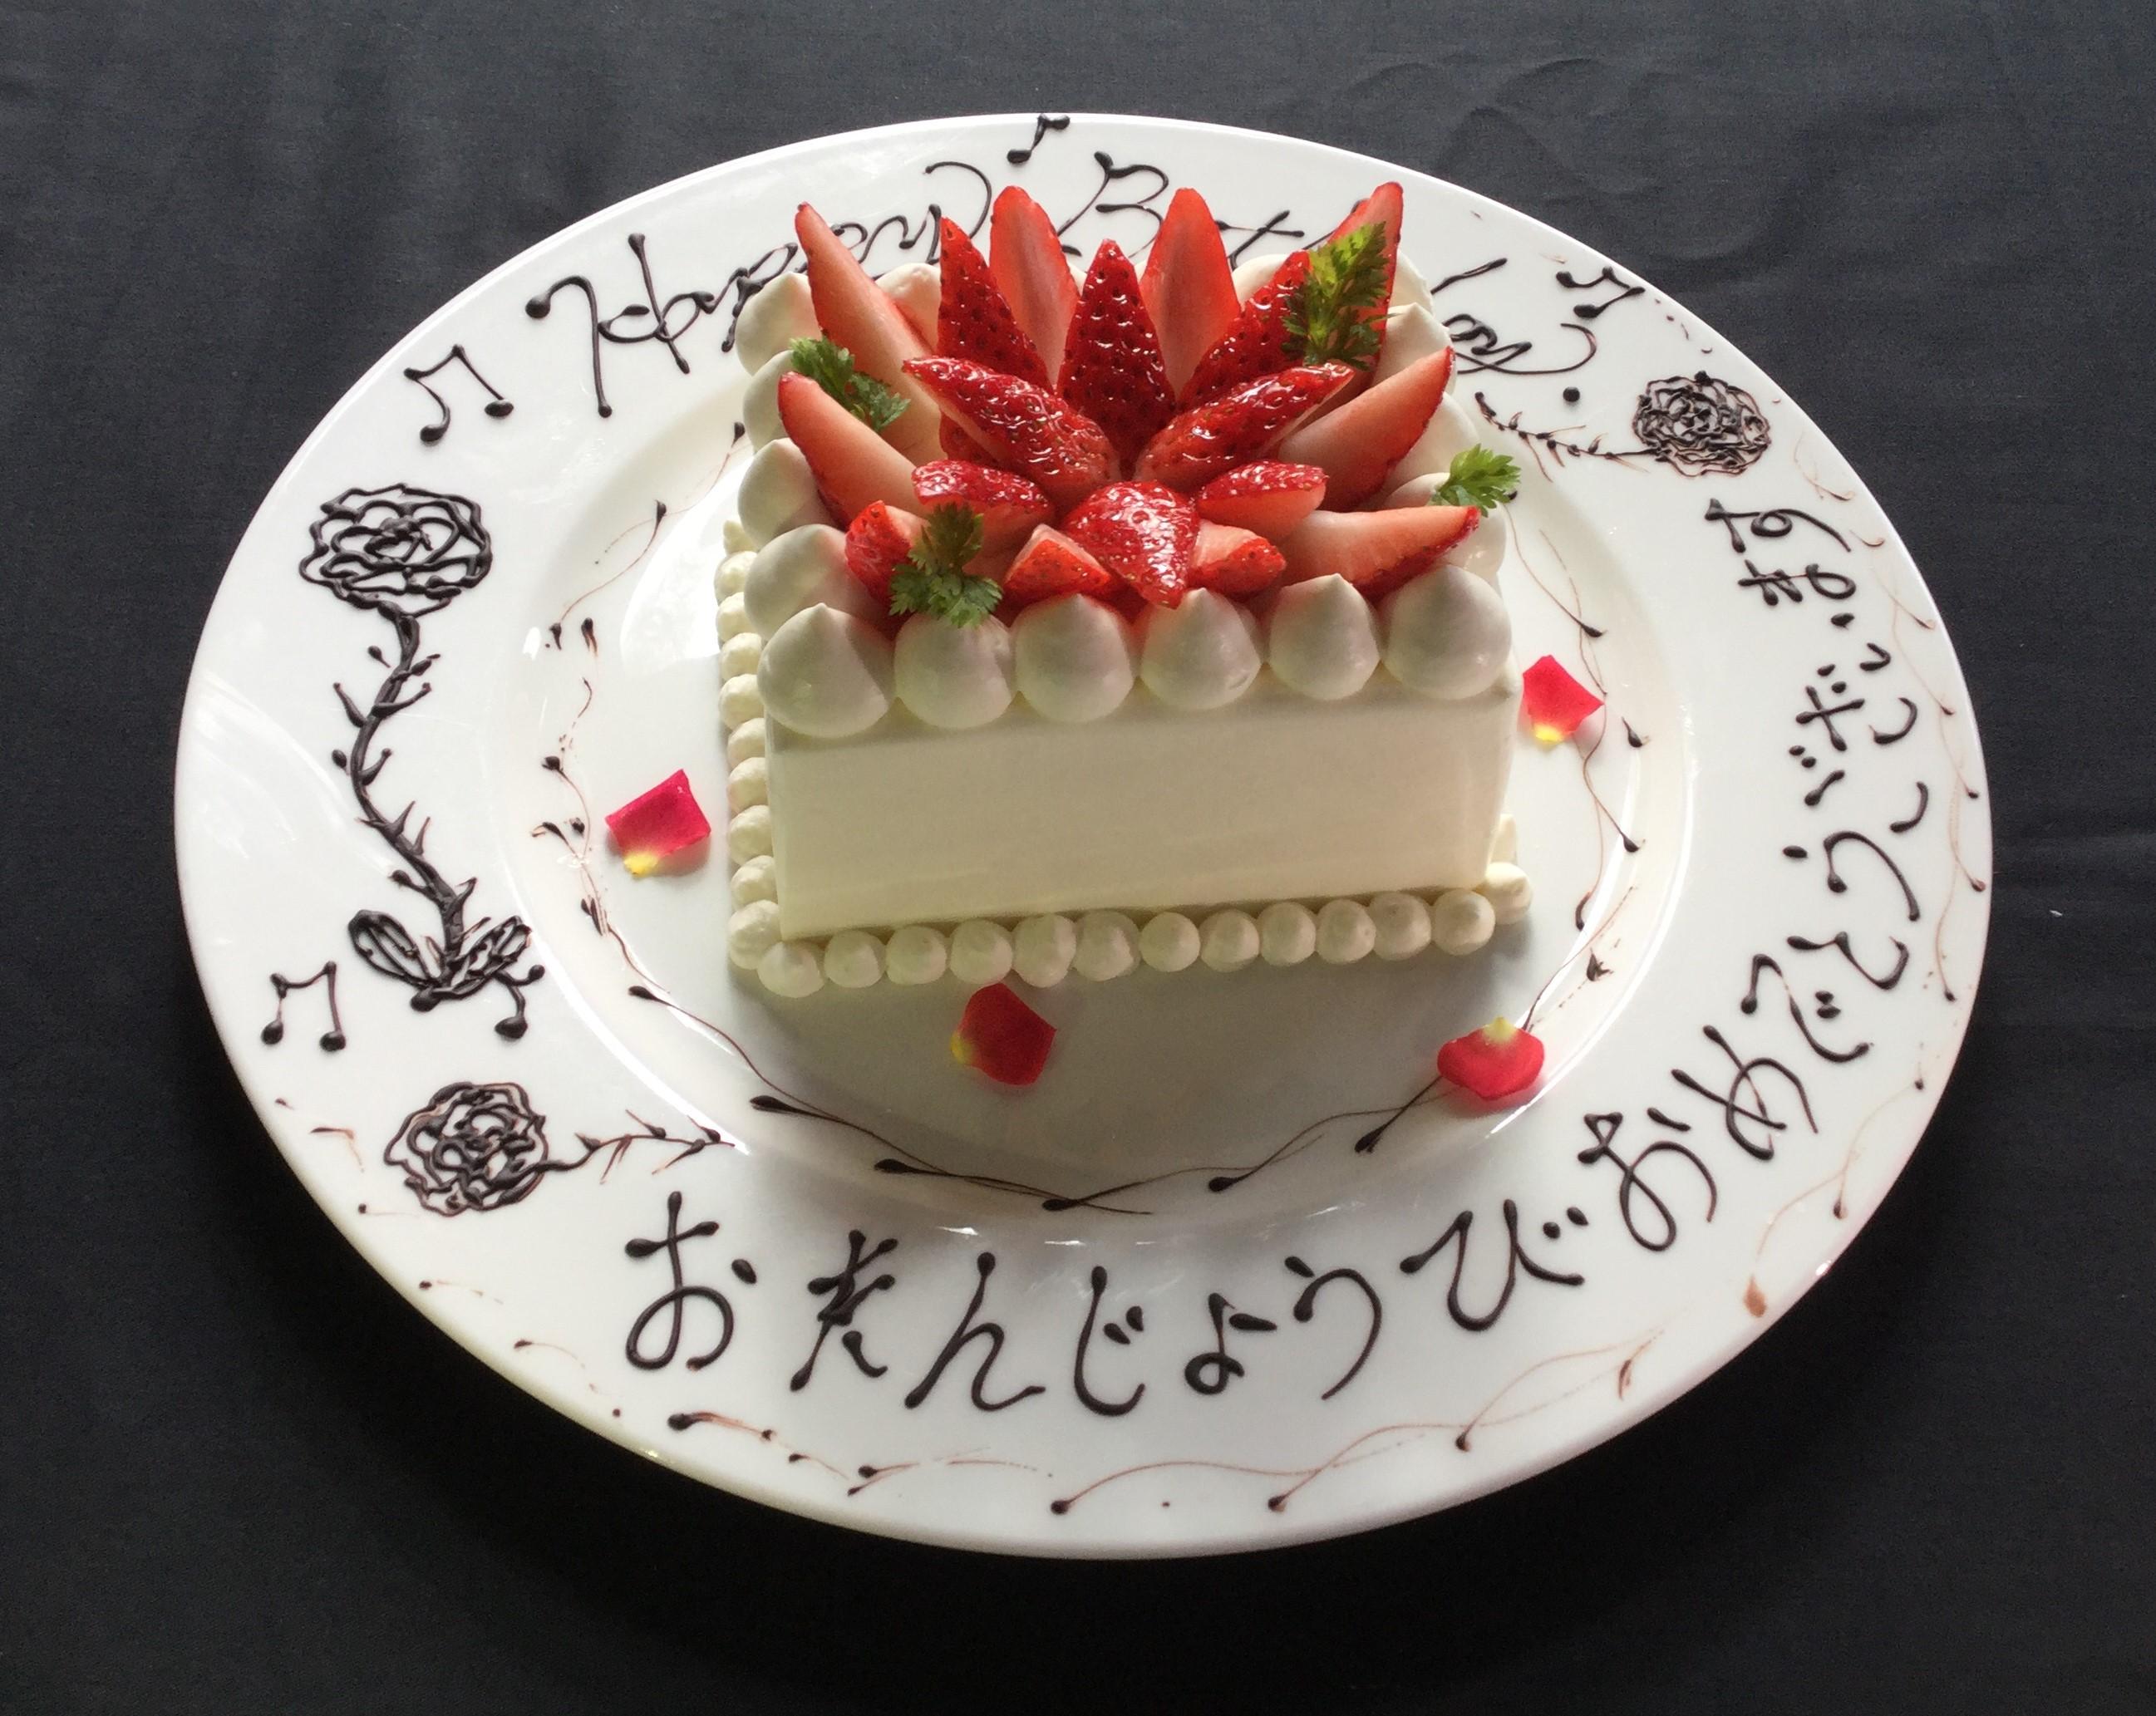 バースデーケーキ 蓼科東急ホテル